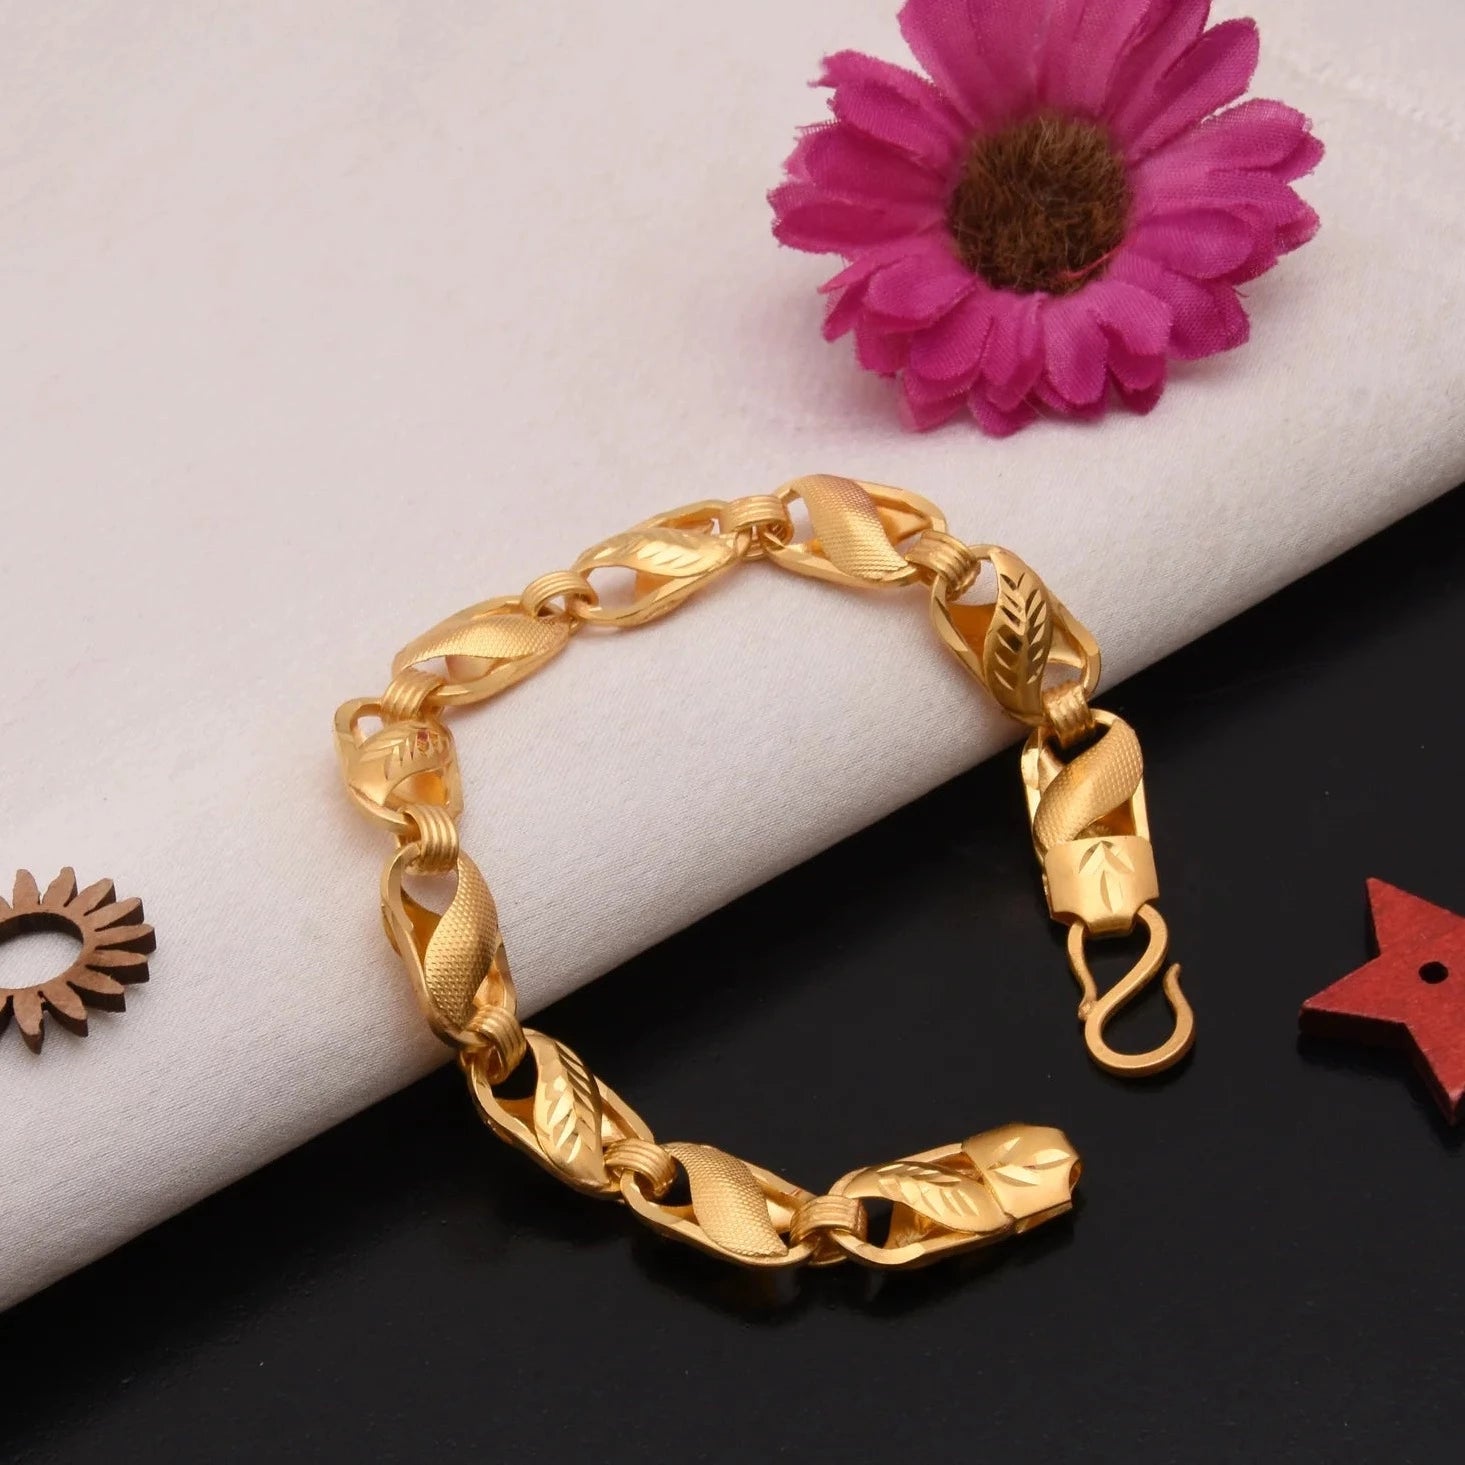 1 Gram Gold Forming Superior Gorgeous Design Bracelet - Style C309 - AmazingBaba